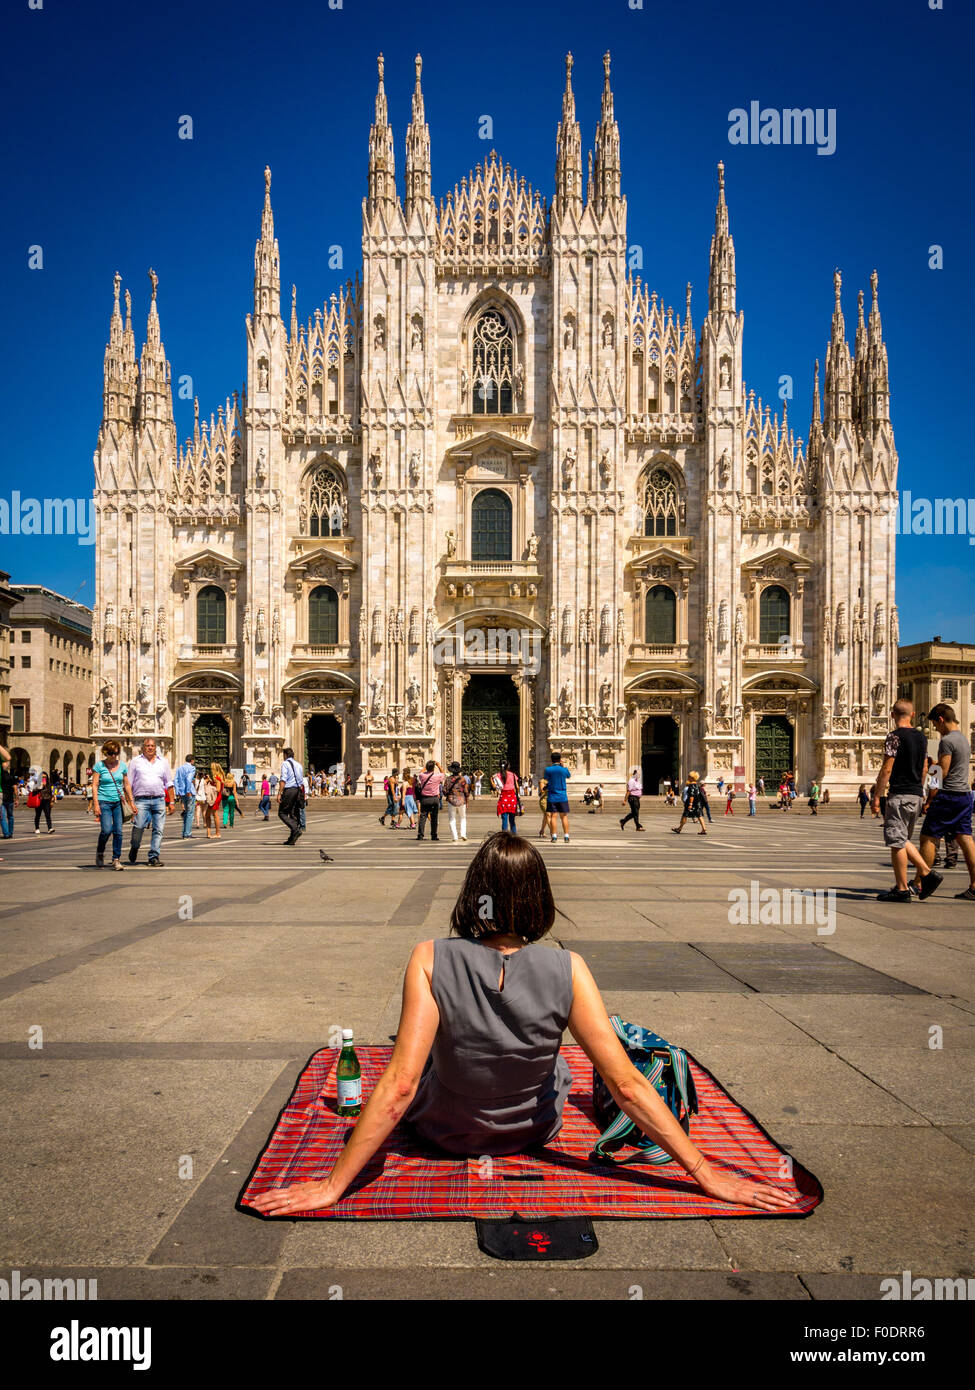 Turista femminile seduto su una coperta picnic, sul terreno al di fuori del Duomo di Milano. Italia Foto Stock